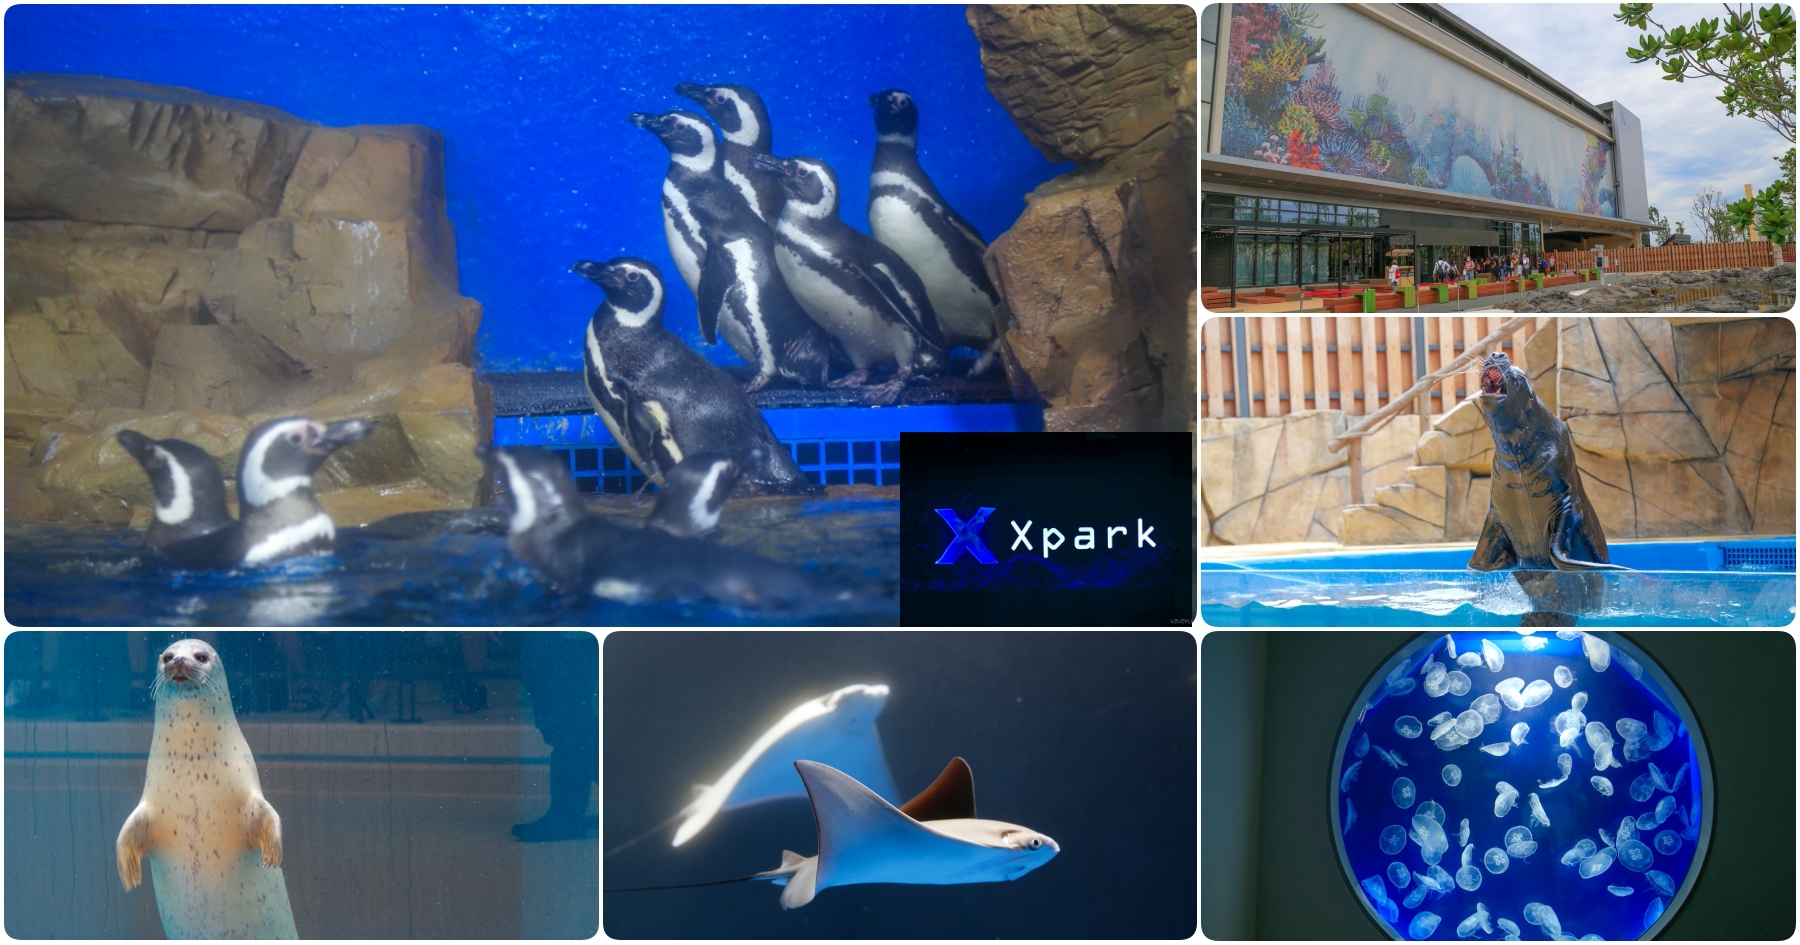 [桃園景點]全台最新水族館「Xpark」實景參觀/票價場次/地圖交通/停車價格/週邊美食一次收錄(內附影片) @VIVIYU小世界